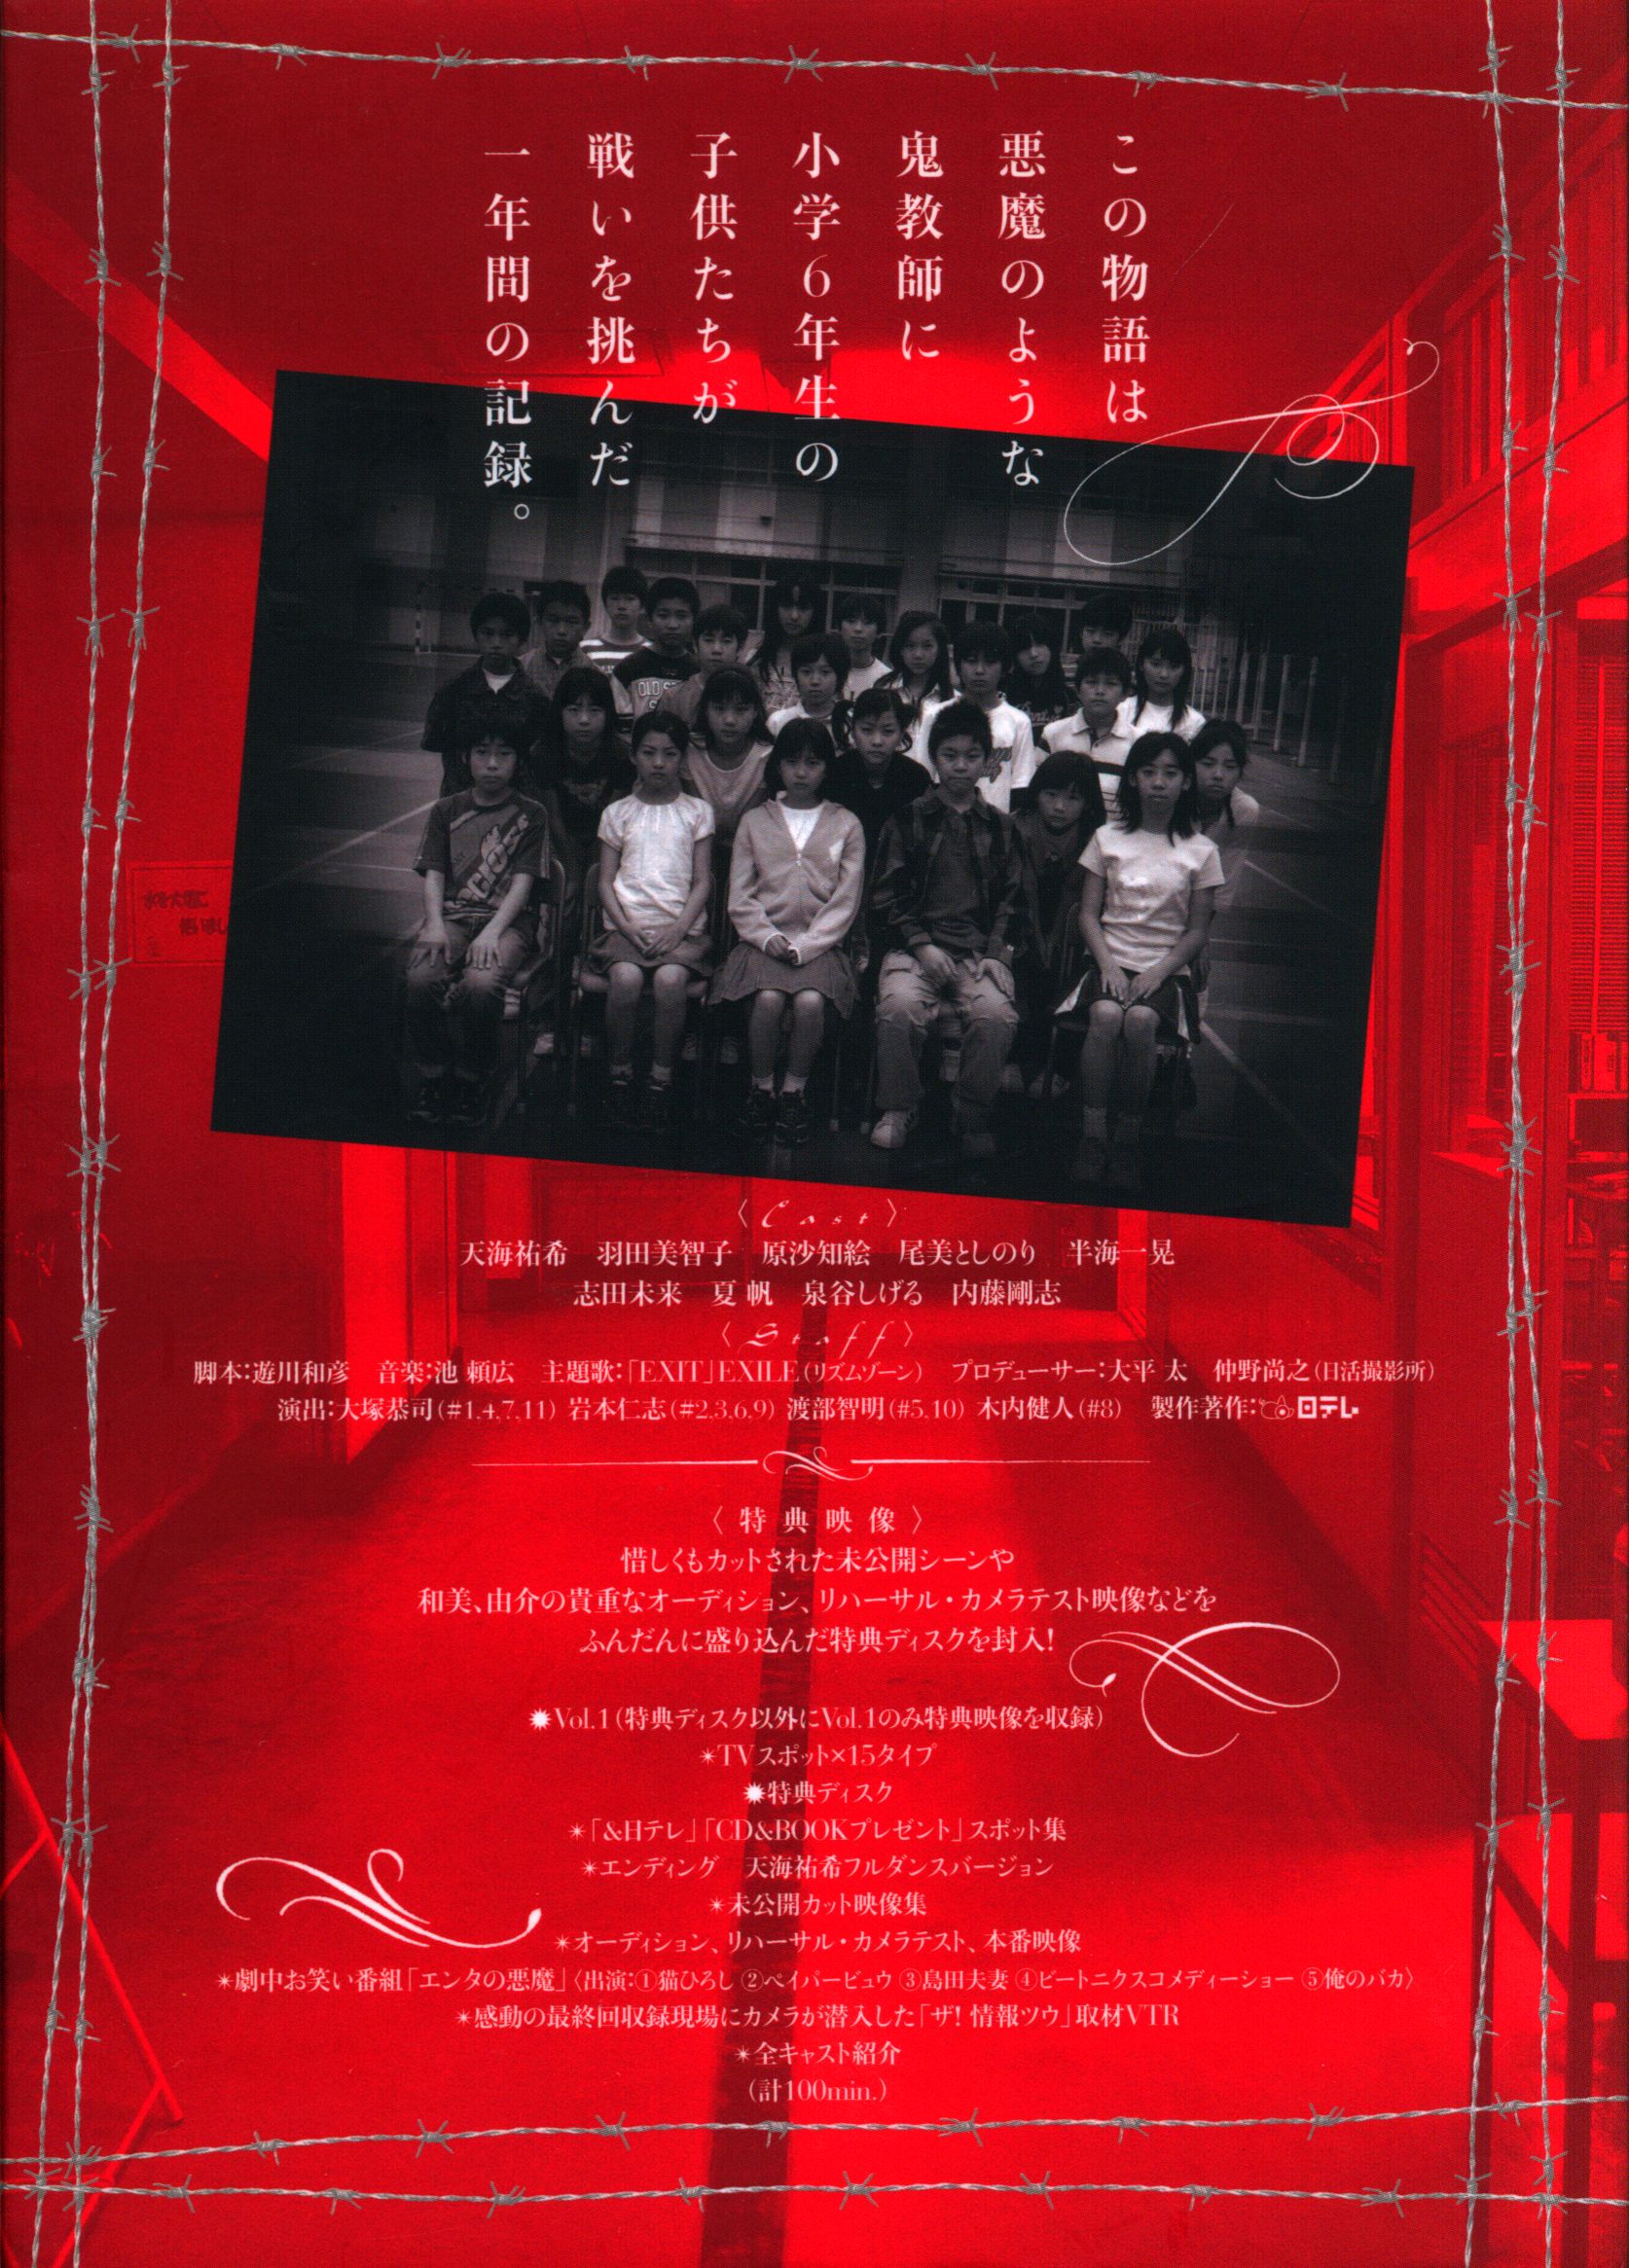 ドラマ 女王の教室 DVD-BOX P1fKX-m27986285102 ルカリ